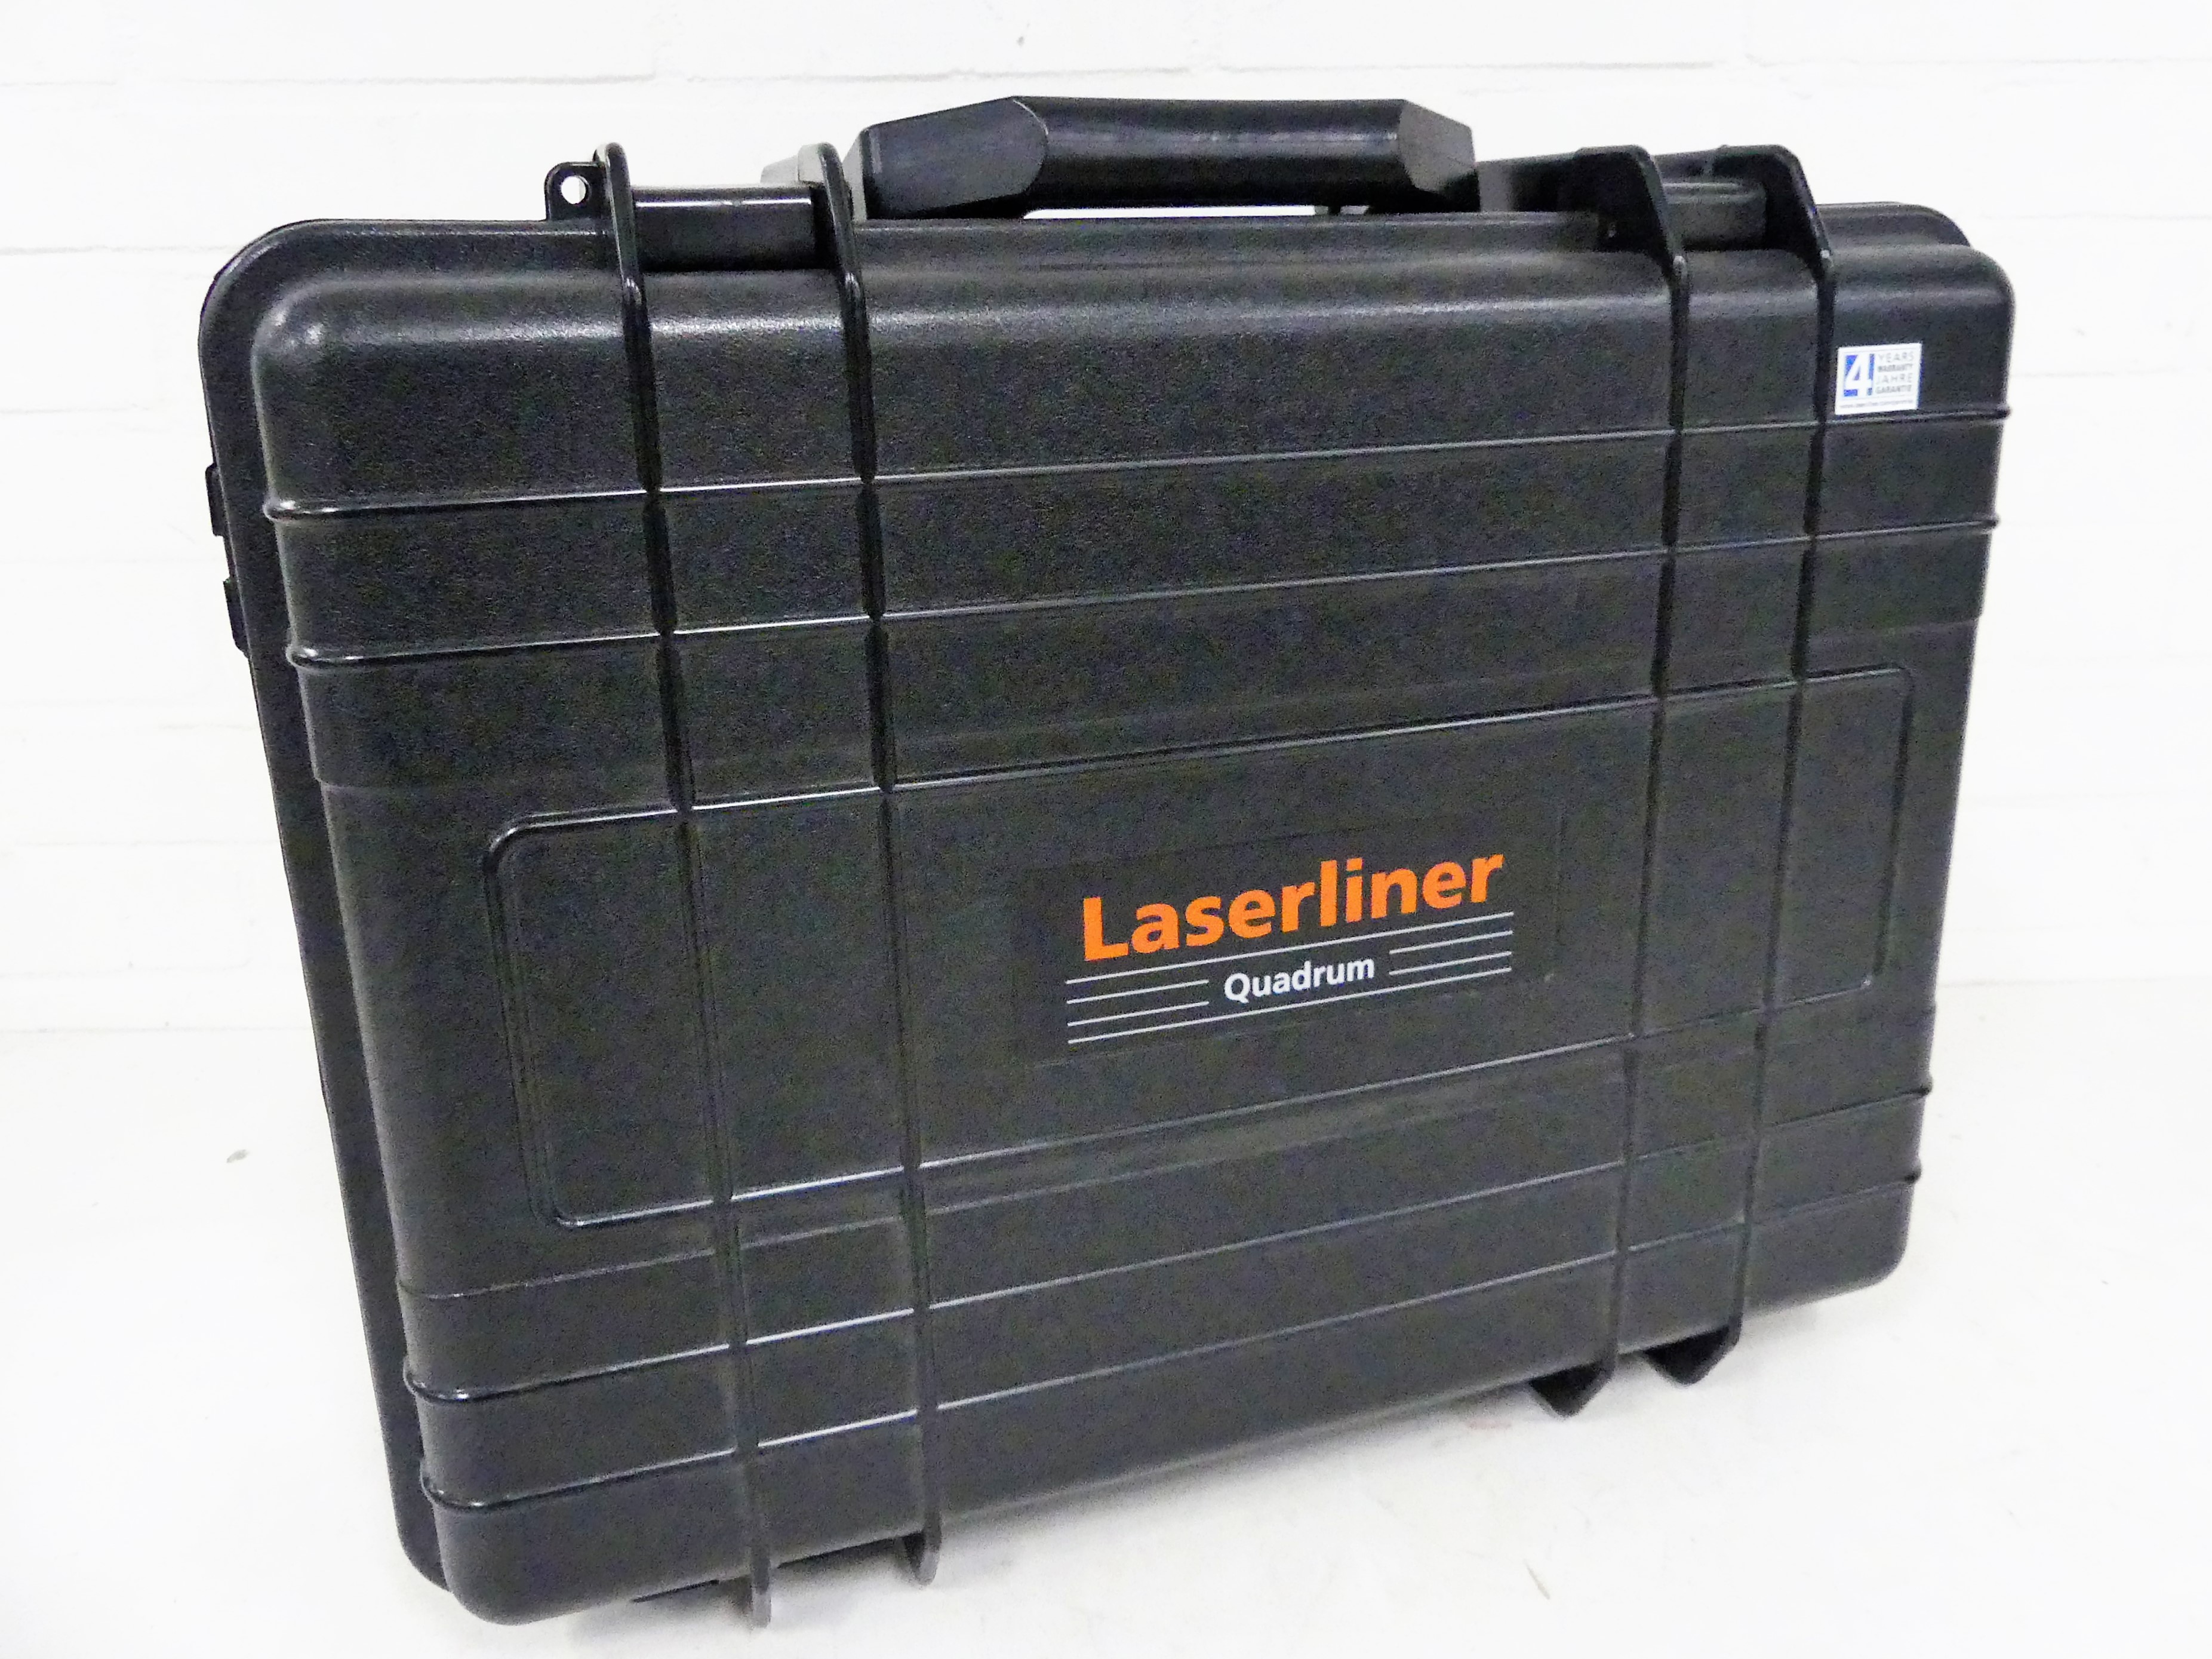 Laserline Quadrum M350 S rotatielaser